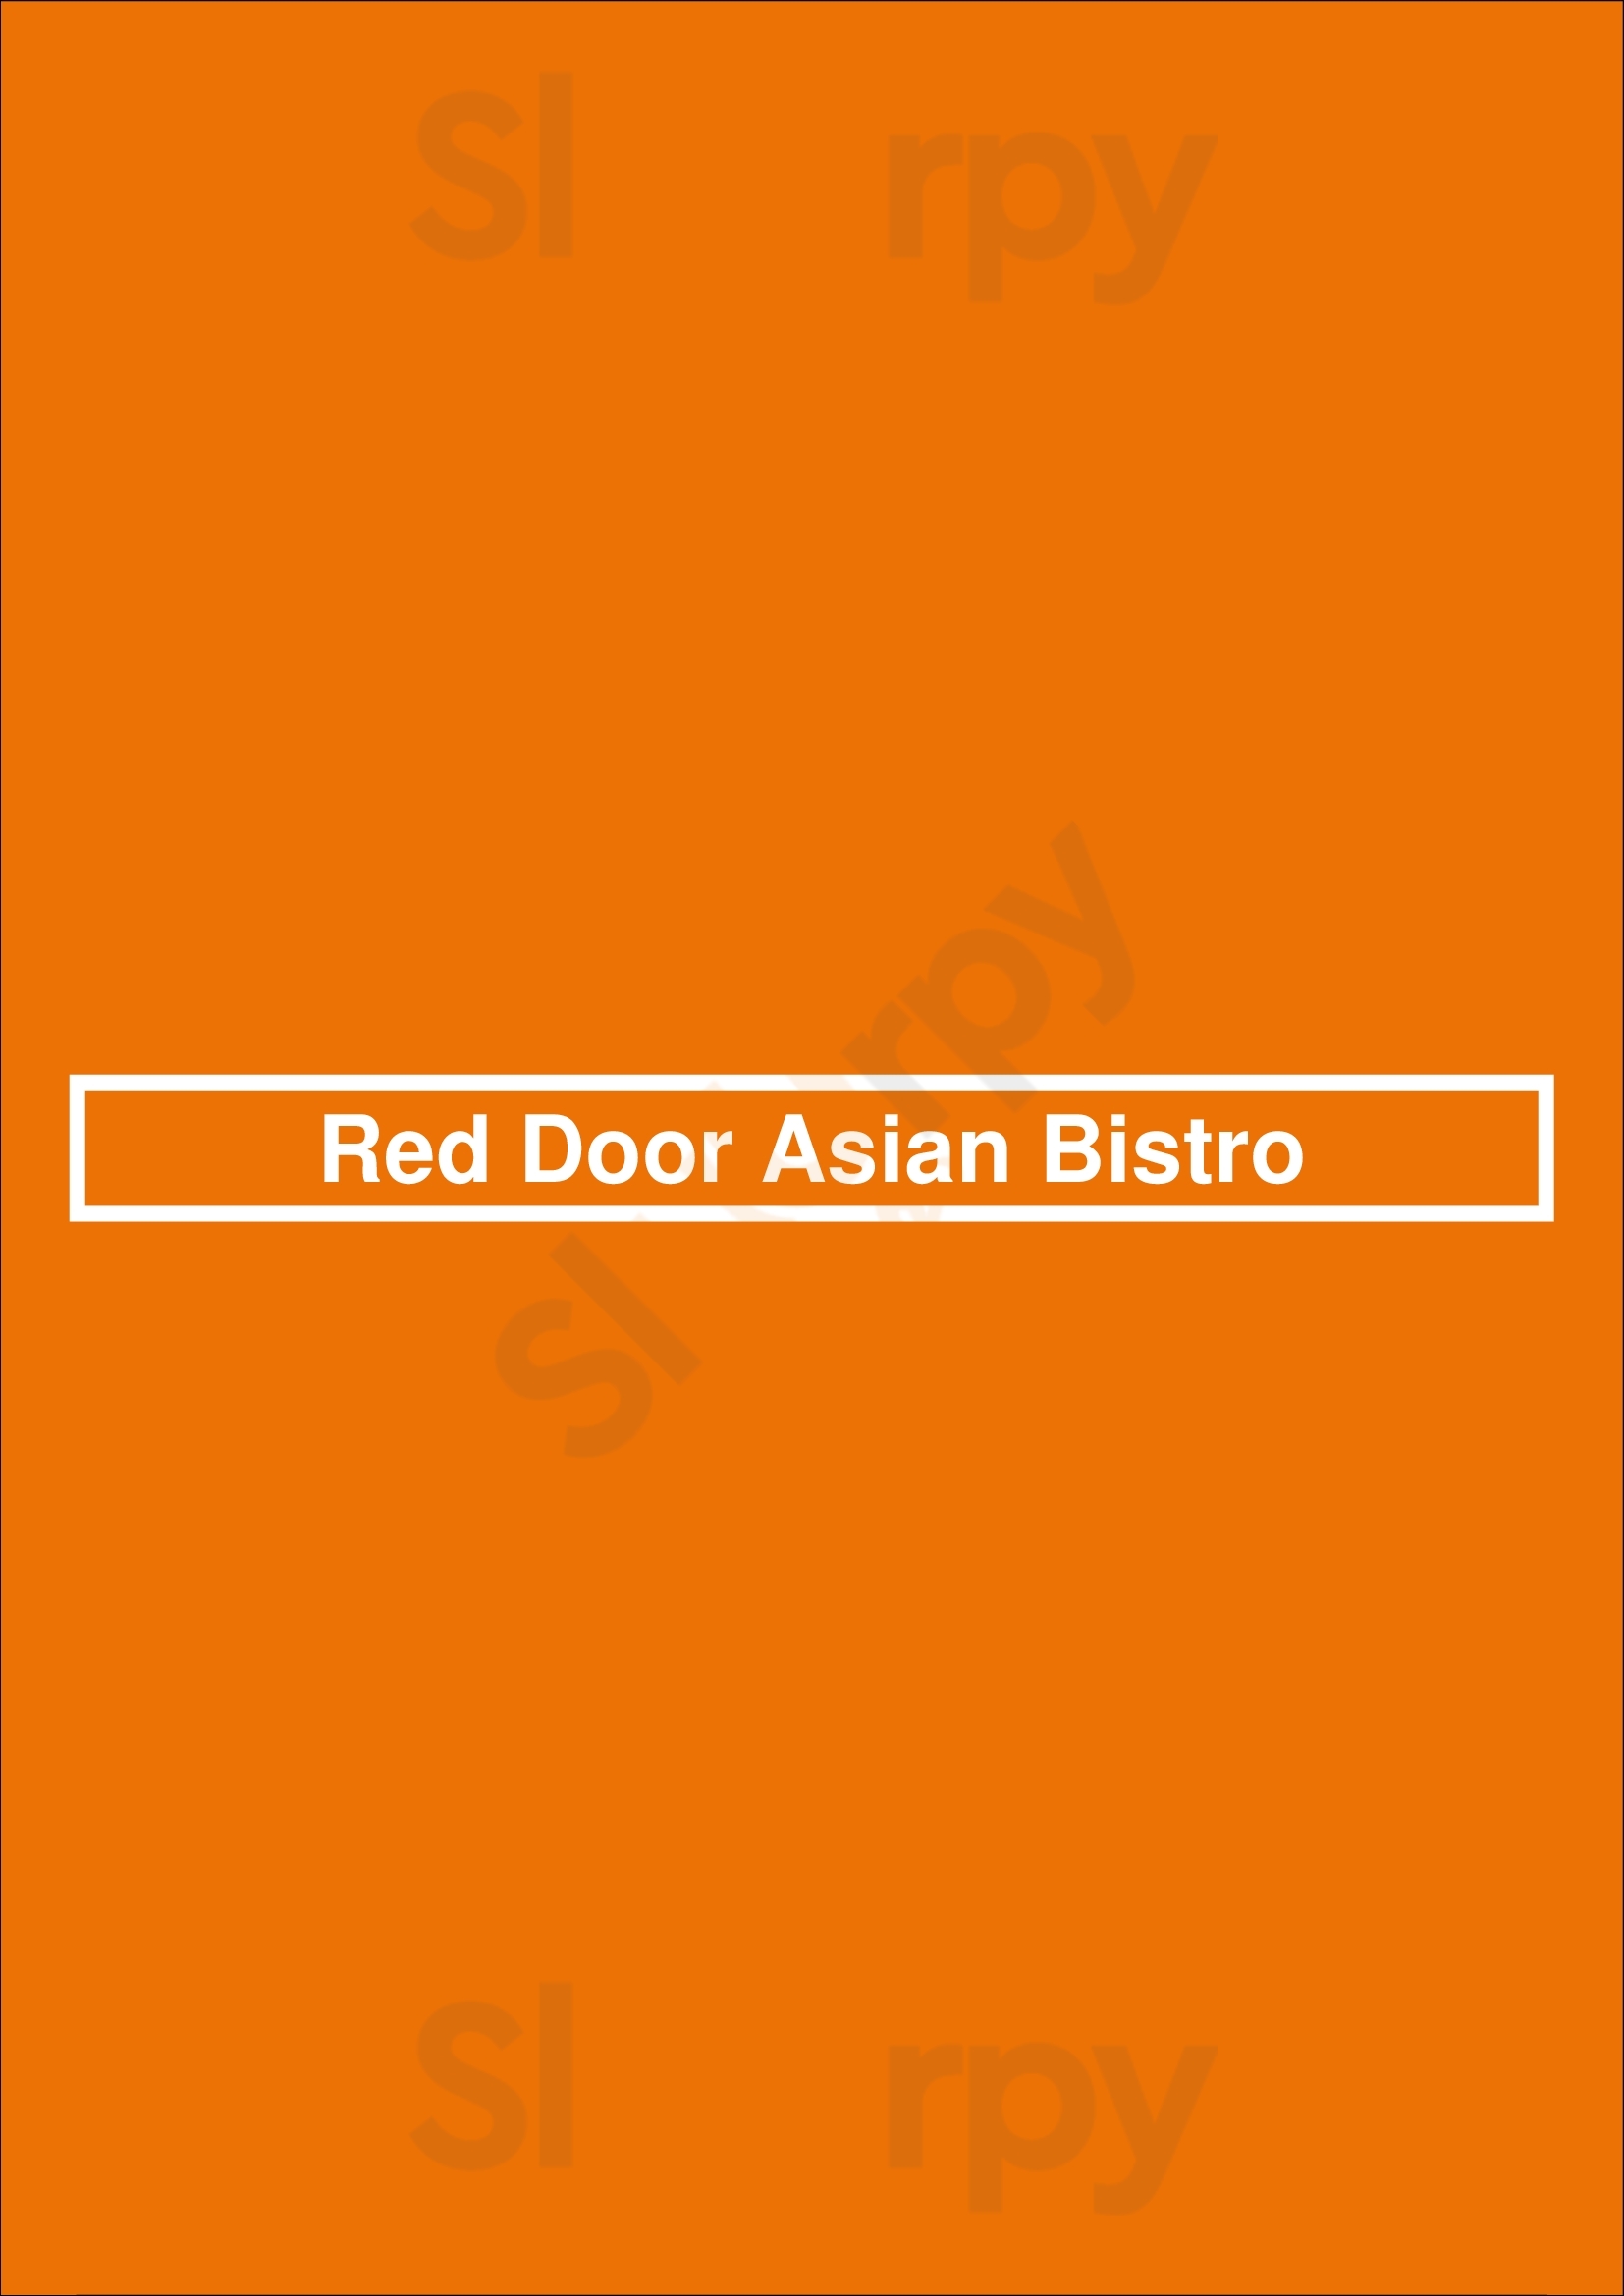 Red Door Asian Bistro Fort Lauderdale Menu - 1